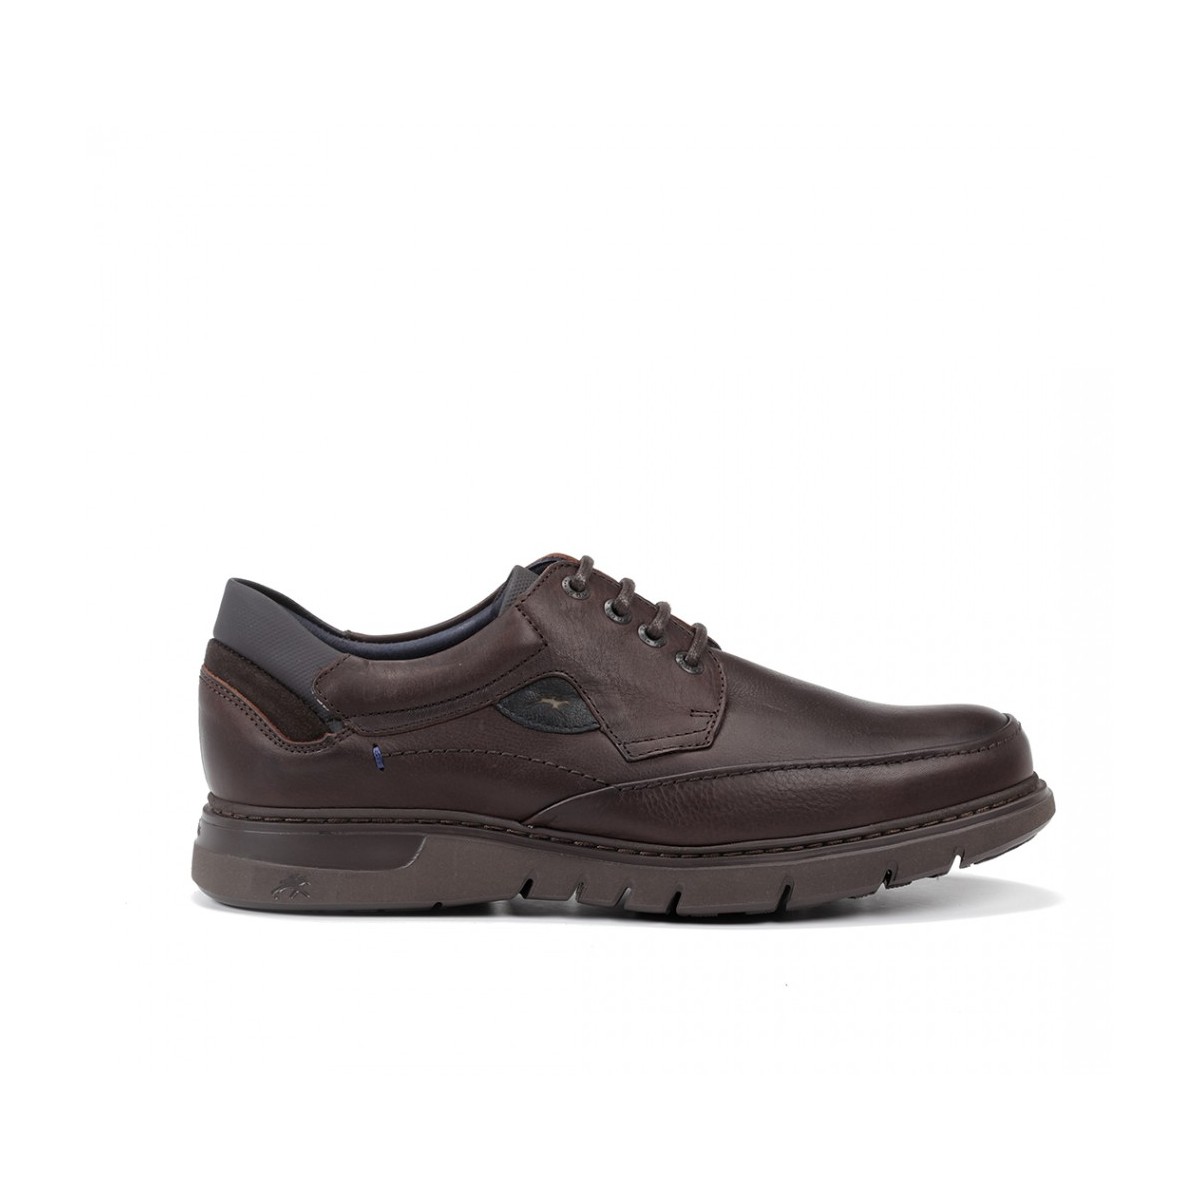 Fluchos zapato con cordones ligeros color marrón hombre Salvate F0248